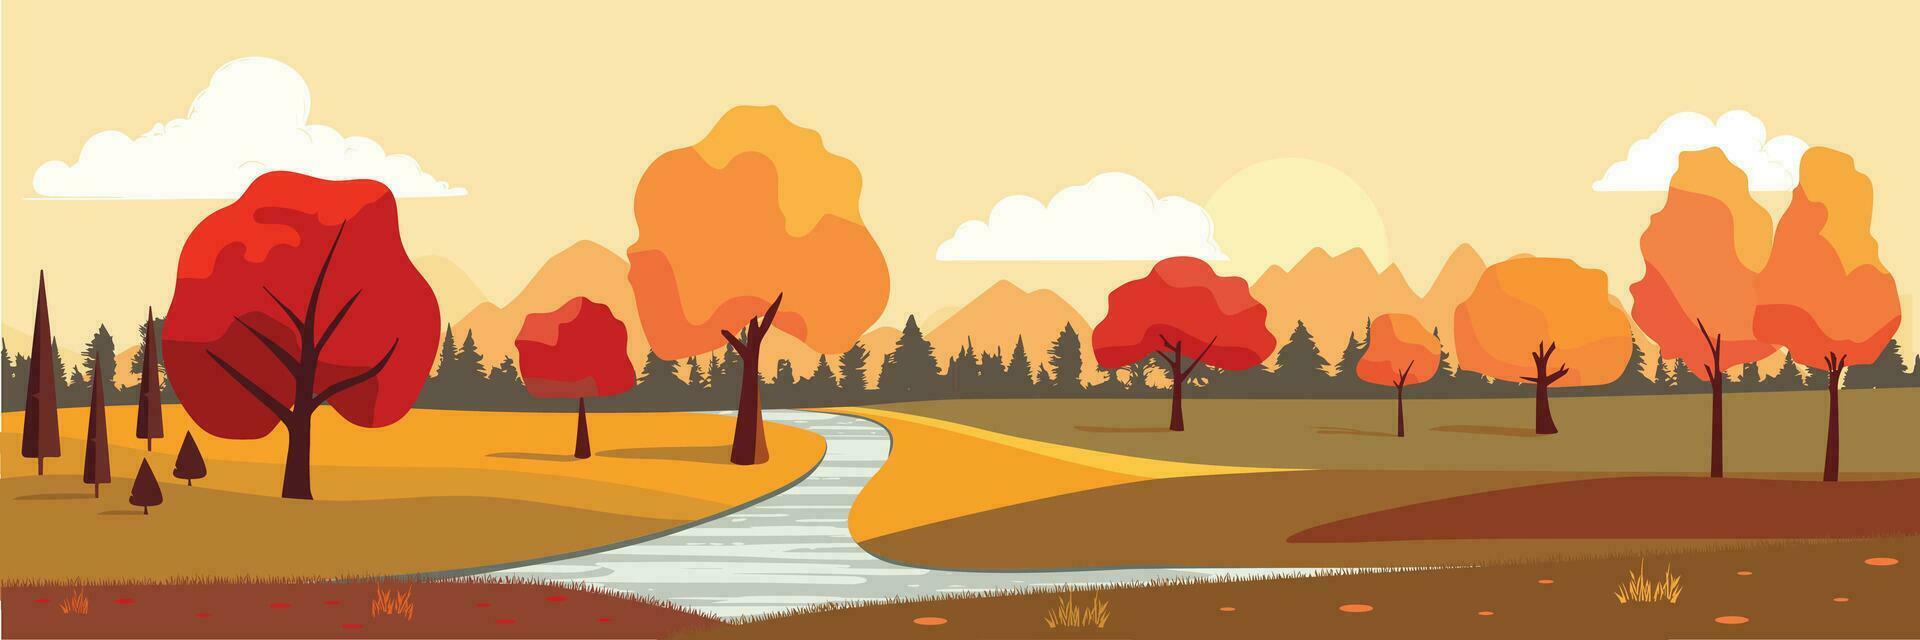 herfst lang spandoek. natuur vallen landschap. vredig landschap van natuurlijk platteland met zonsopkomst voor vallen seizoen achtergrond. vector illustratie.